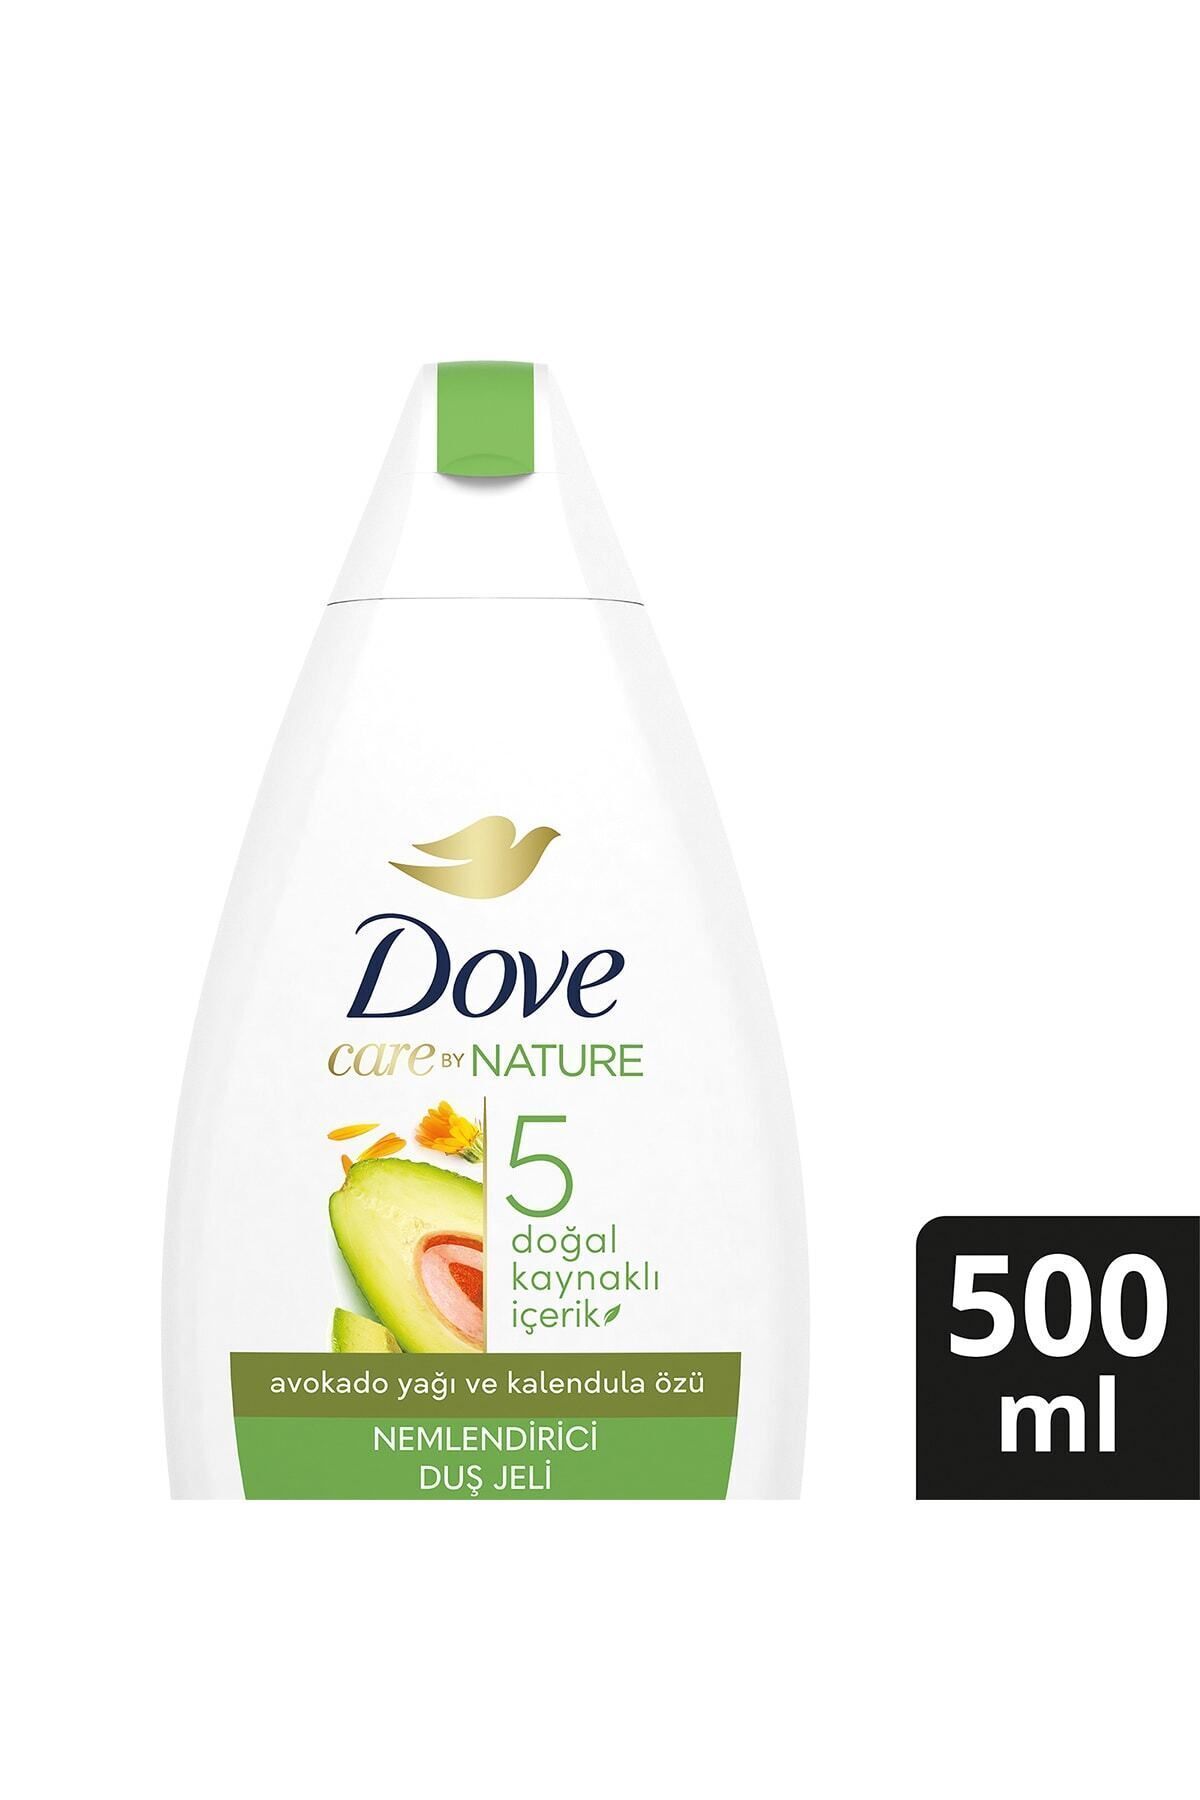 Dove Care By Nature Nemlendirici Duş Jeli Avokado Yağı Ve Kalendula Özü Canlandırıcı 500 ml